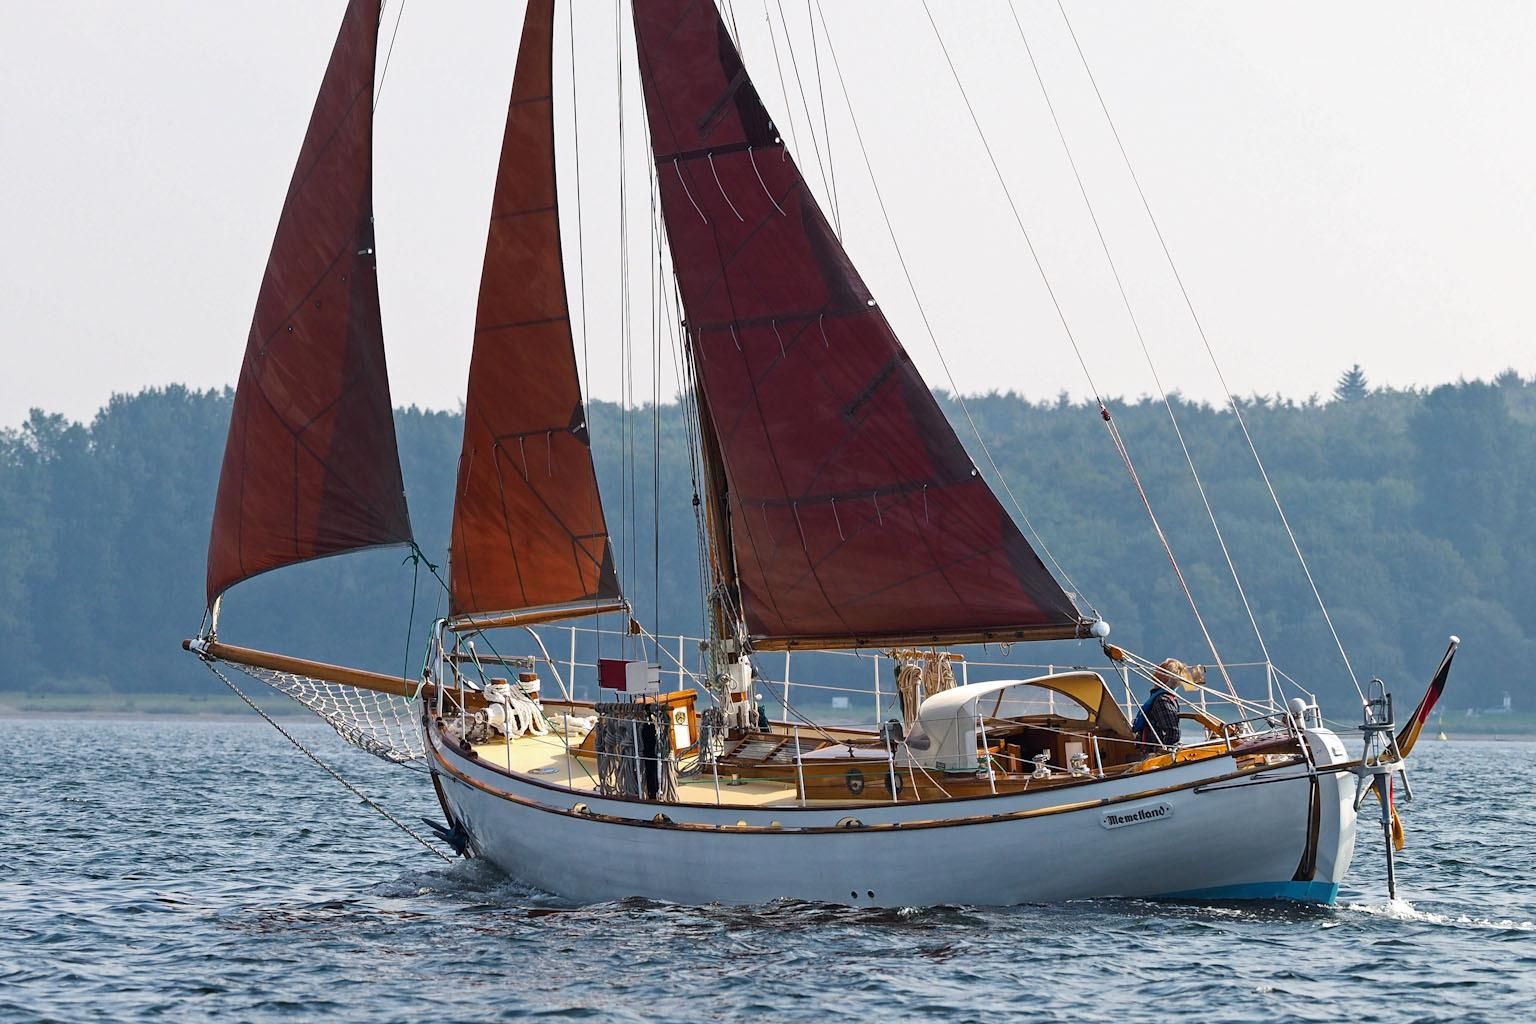 50 foot wooden sailboat